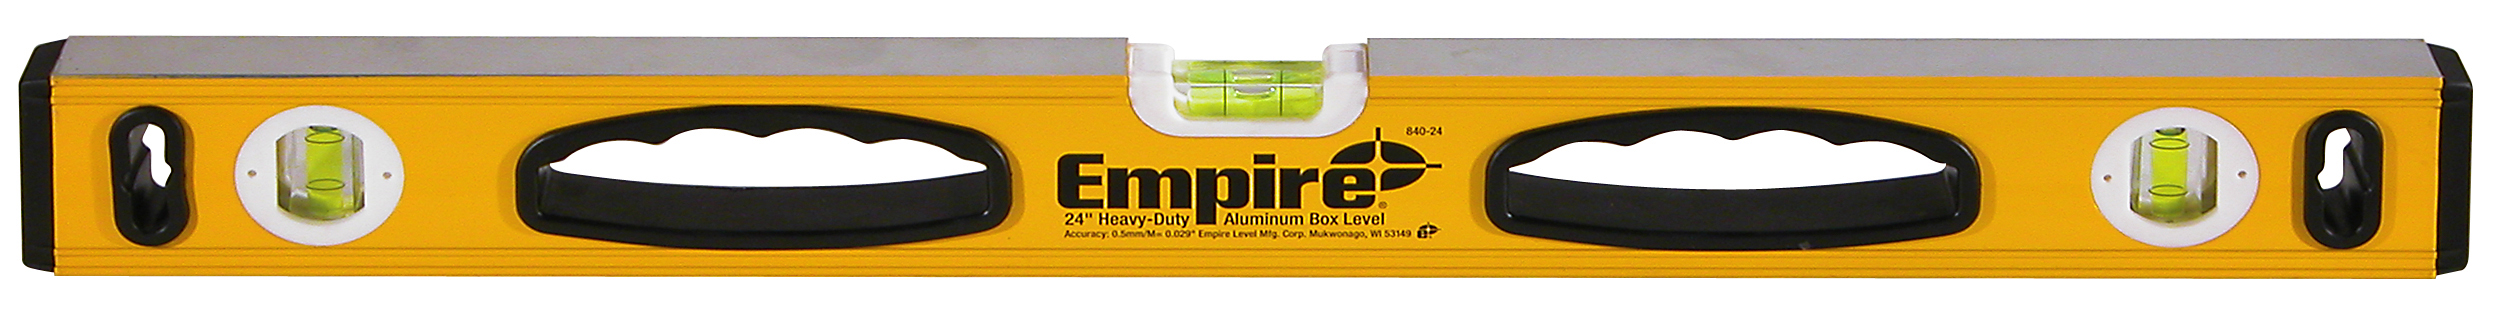 EMPIRE 840 SERIES BOX LEVEL - Click Image to Close